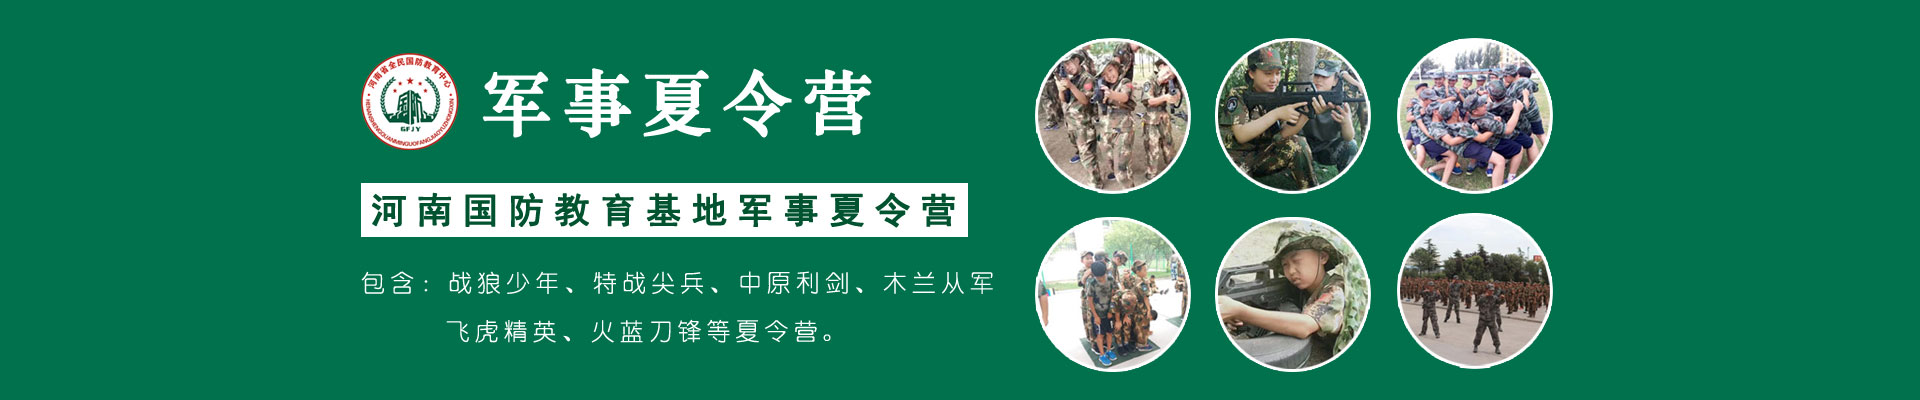 河南国防教育基地军事冬令营